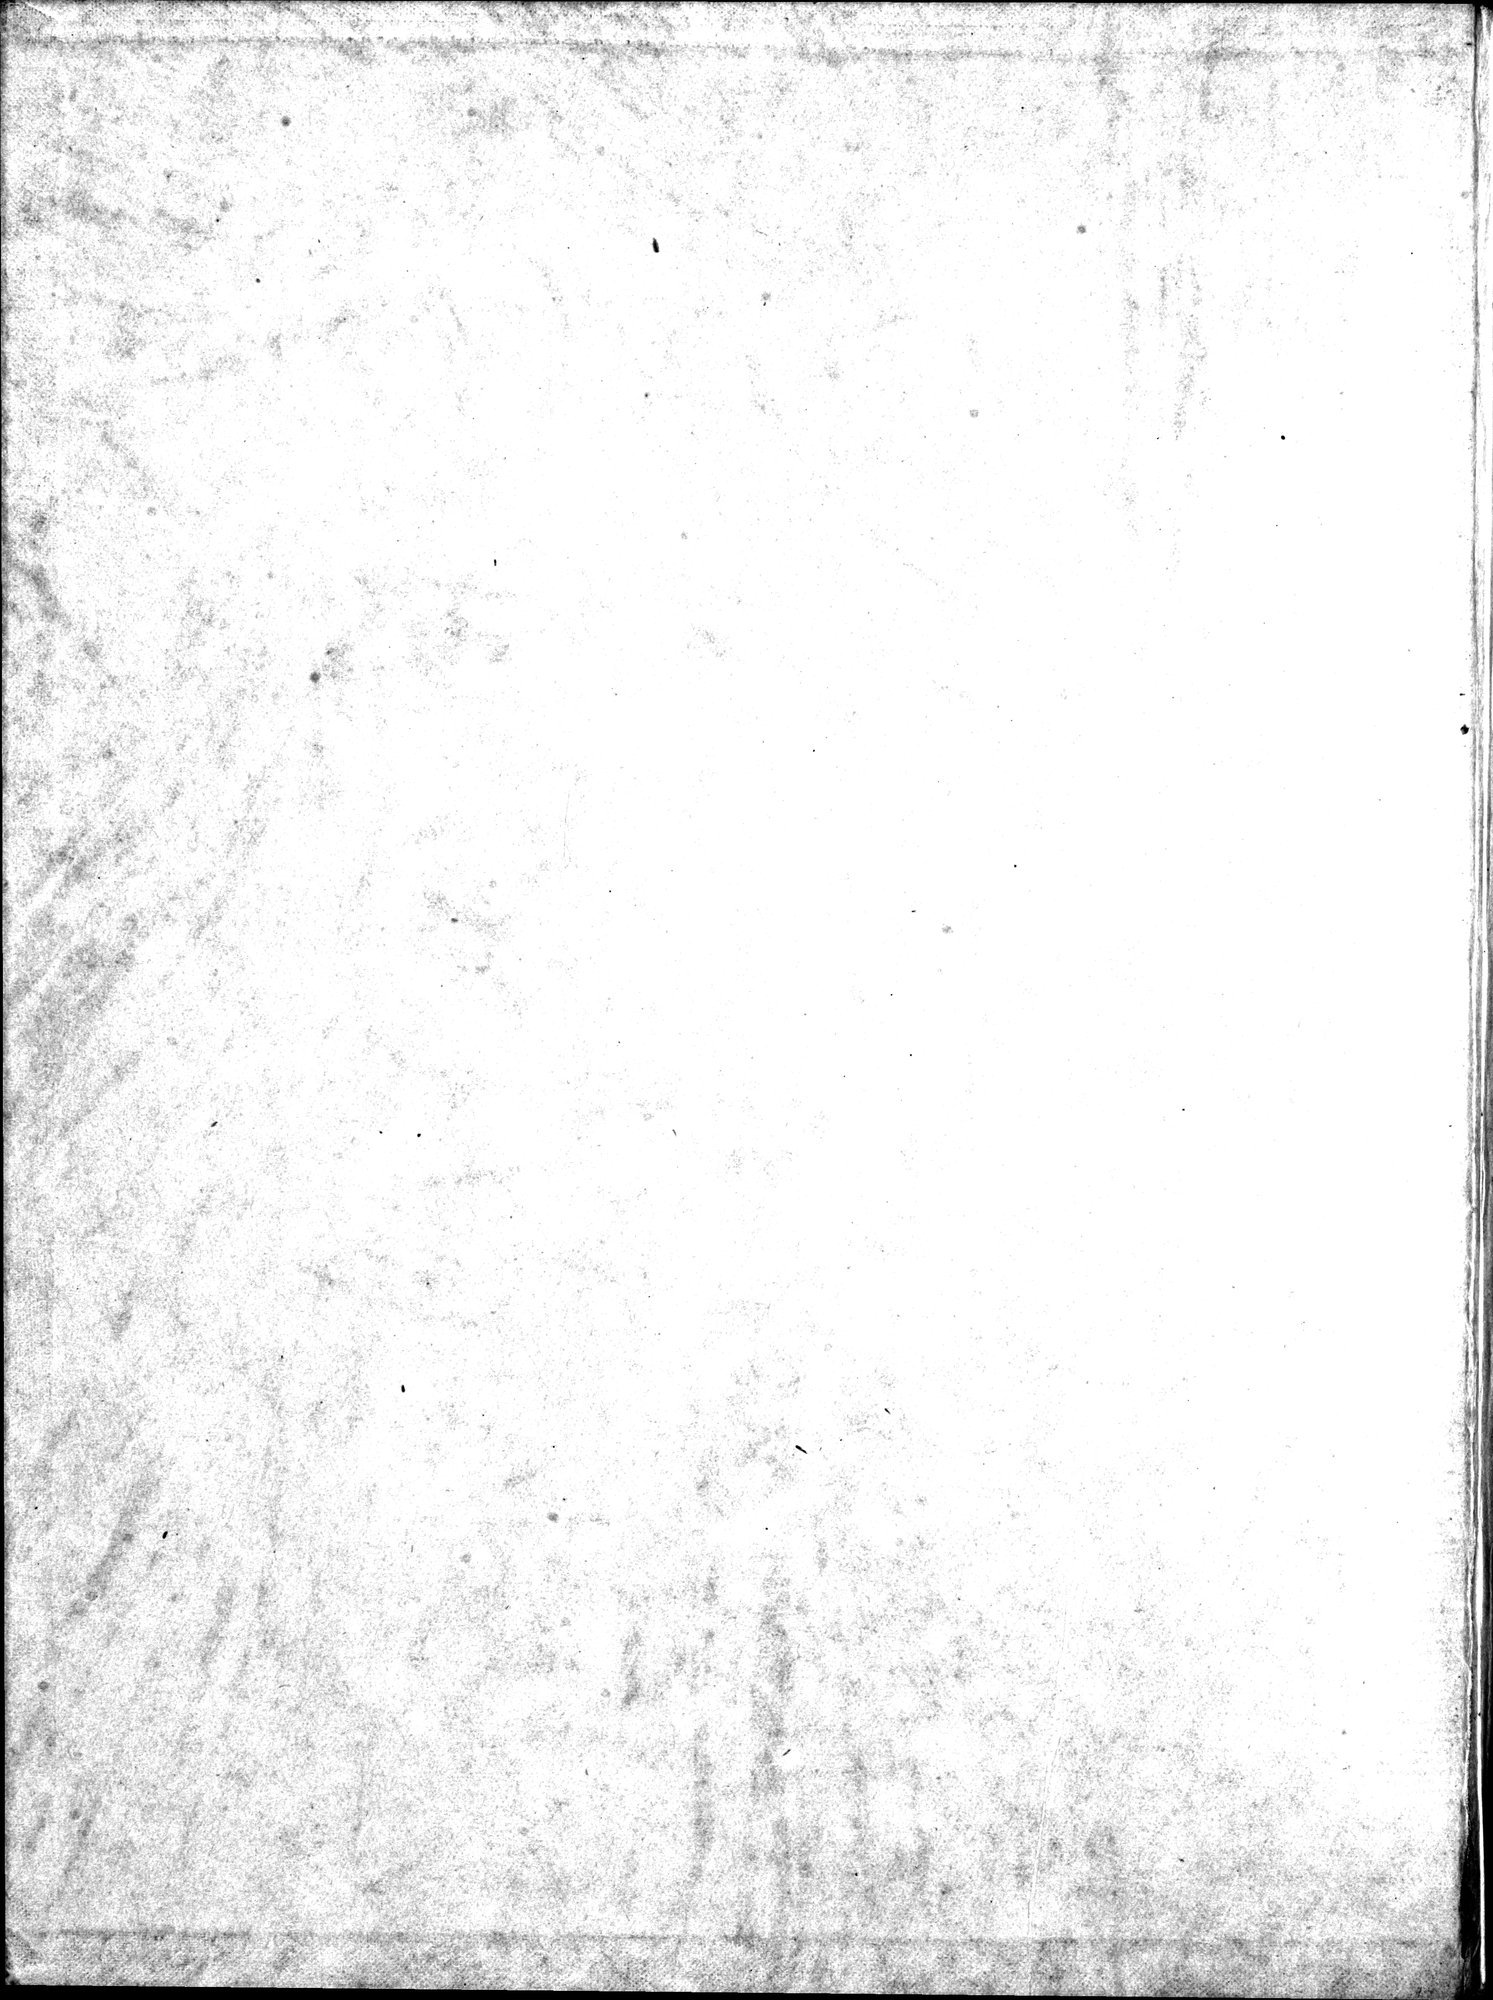 Bilderatlas zur Kunst und Kulturgeschichte Mittel-Asiens : vol.1 / Page 2 (Grayscale High Resolution Image)